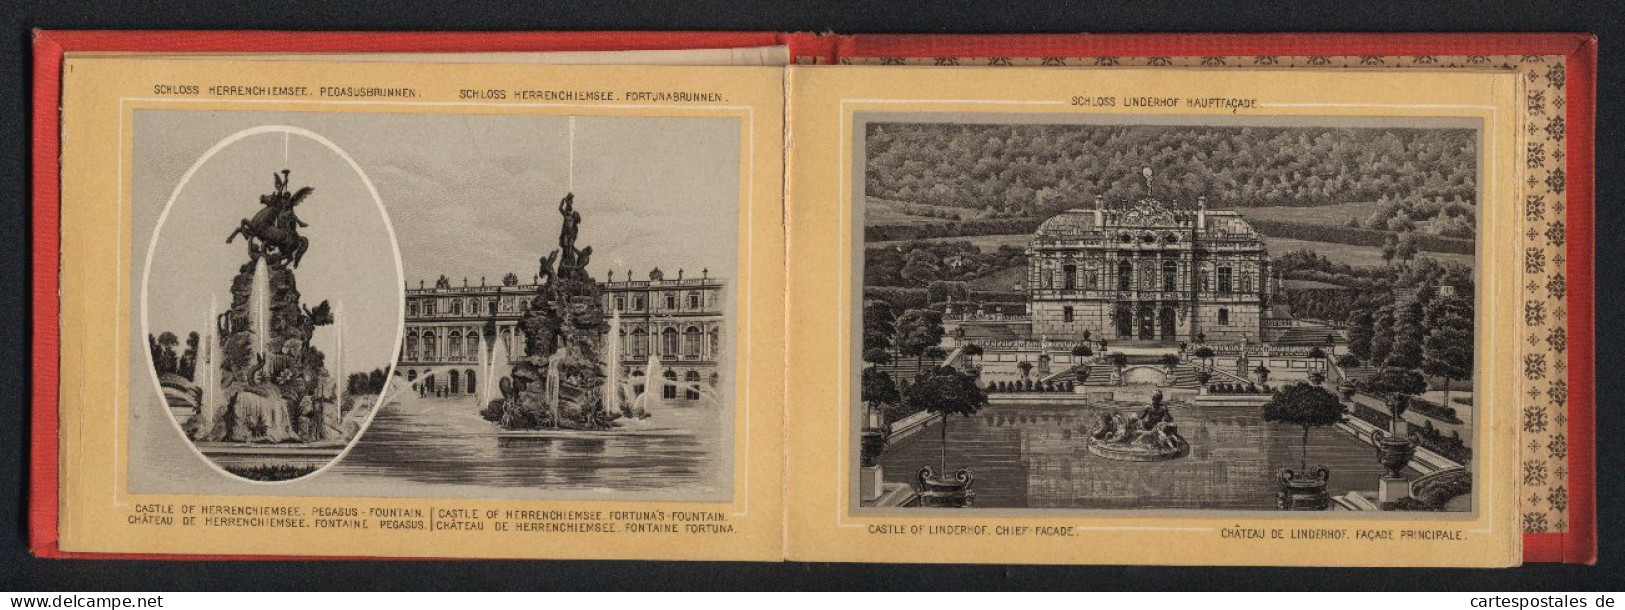 Leporello-Album Lieblingsschlösser König Ludwig II. Mit 17 Lithographie-Ansichten, Linderhof, Kiosk, Neuschwanstein,  - Litografia